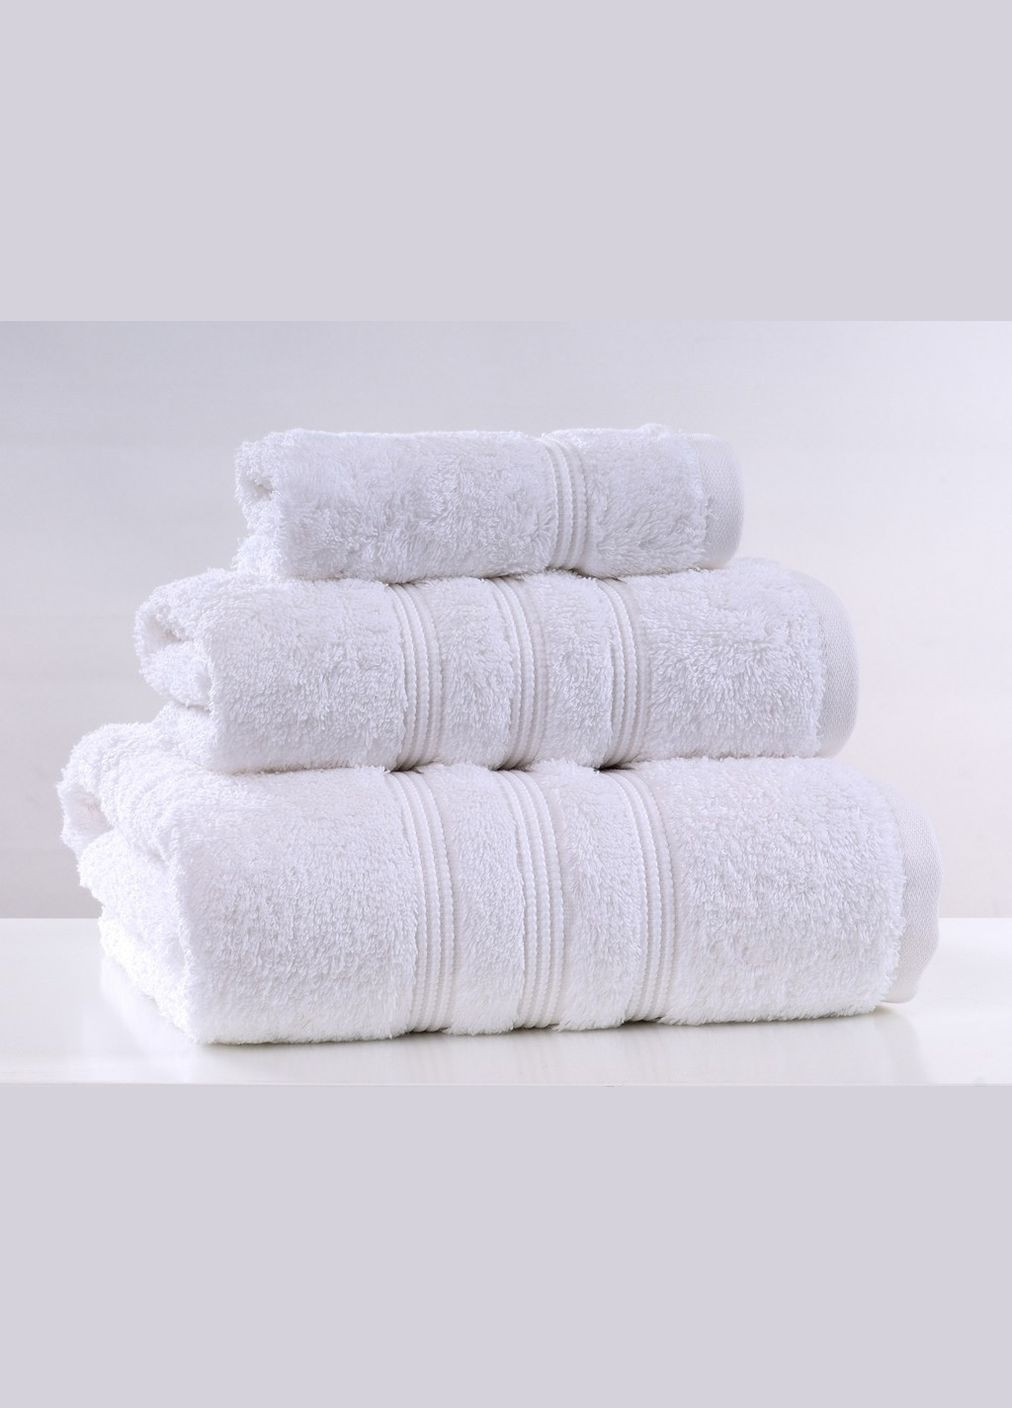 Irya полотенце - elegant beyaz белый 90*150 белый производство -